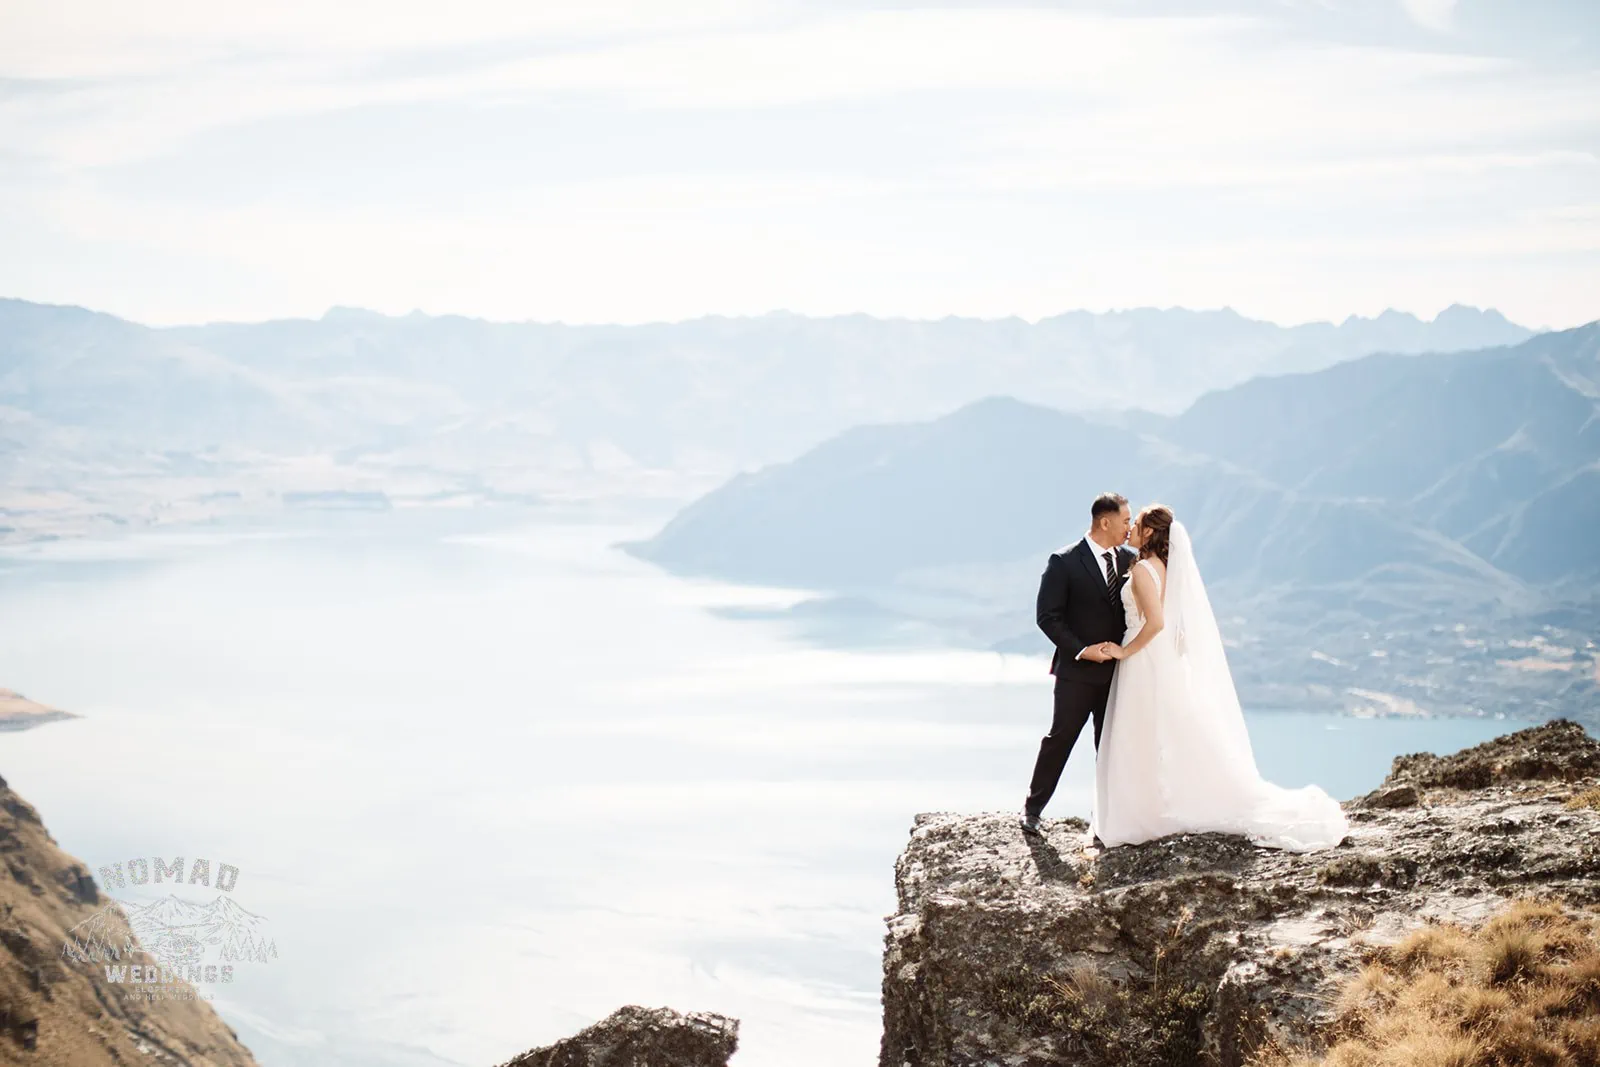 Nhi & Nicholas' Queenstown NZ pre-wedding shoot on top of Cecil Peak overlooking Lake Wanaka.